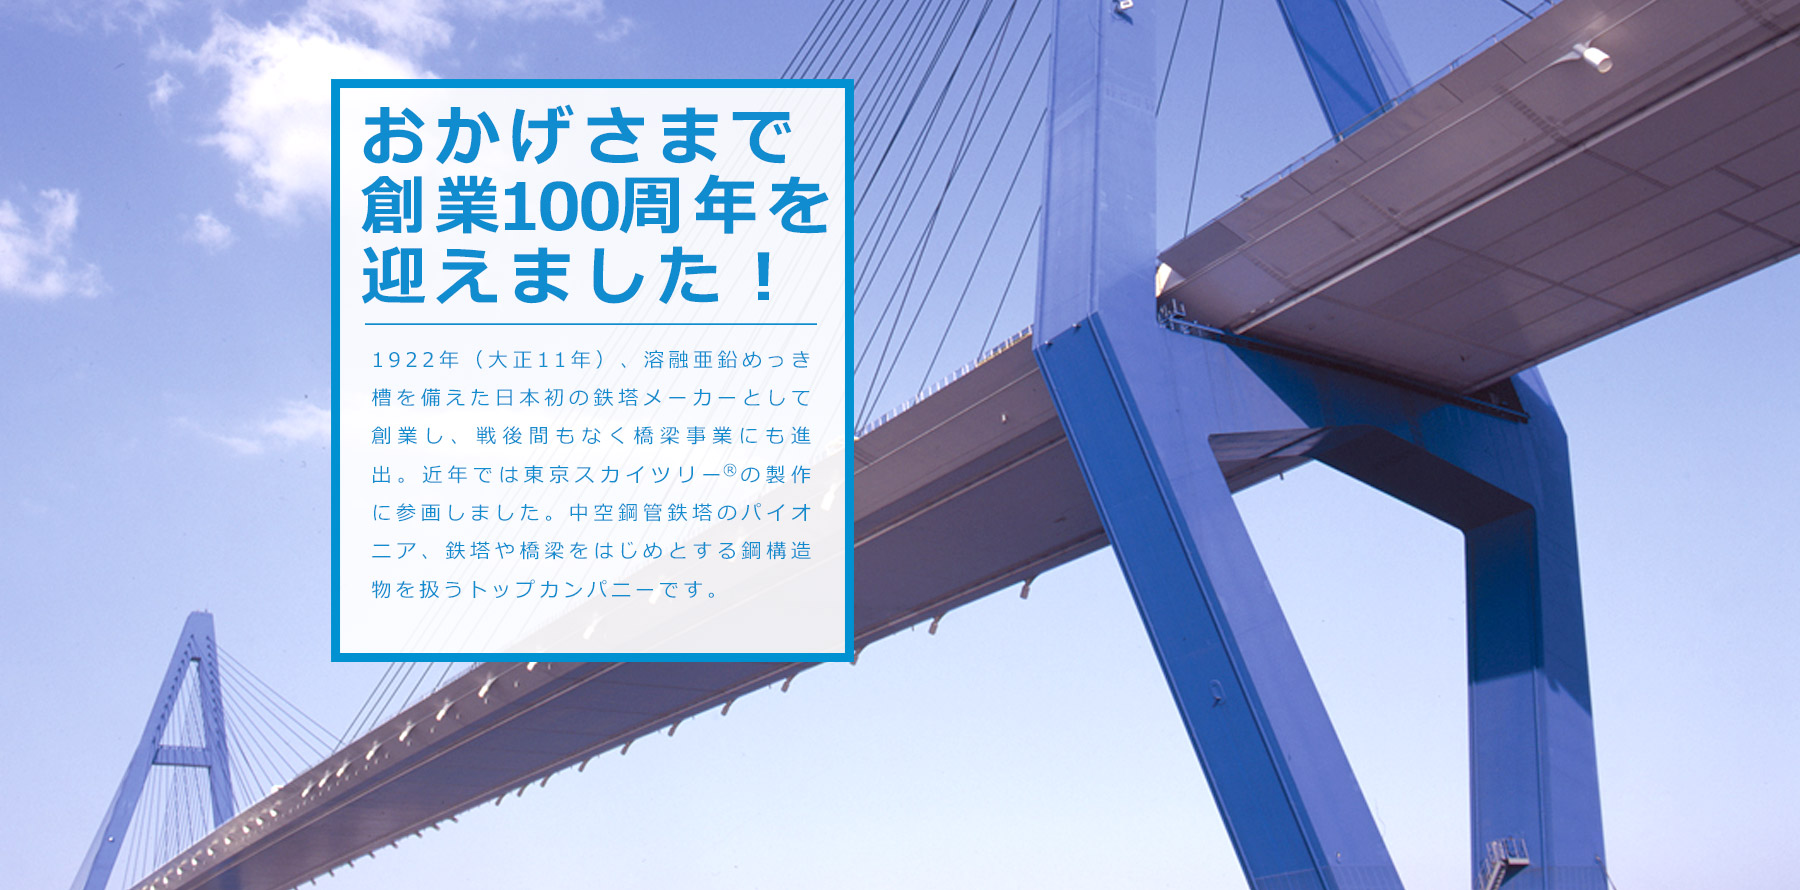 日本鉄塔工業 橋梁事業